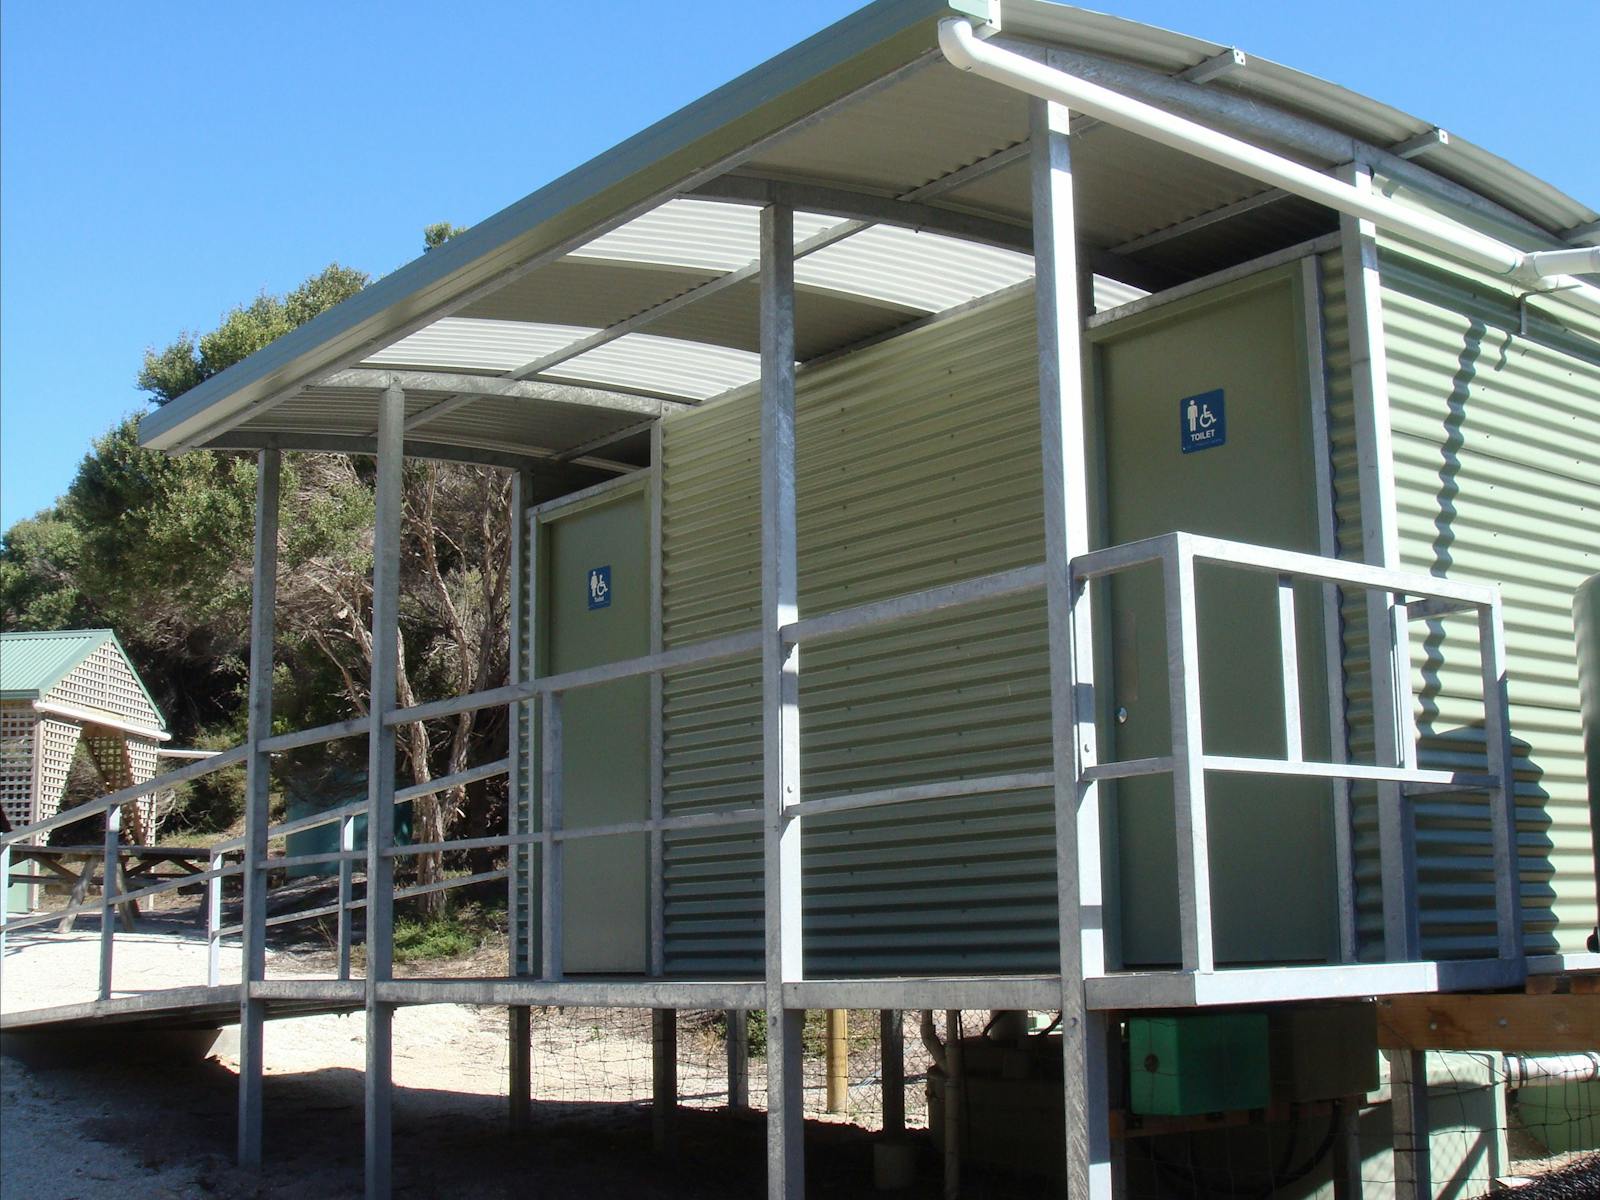 Allport Beach facilities Flinders Island TASMANIA